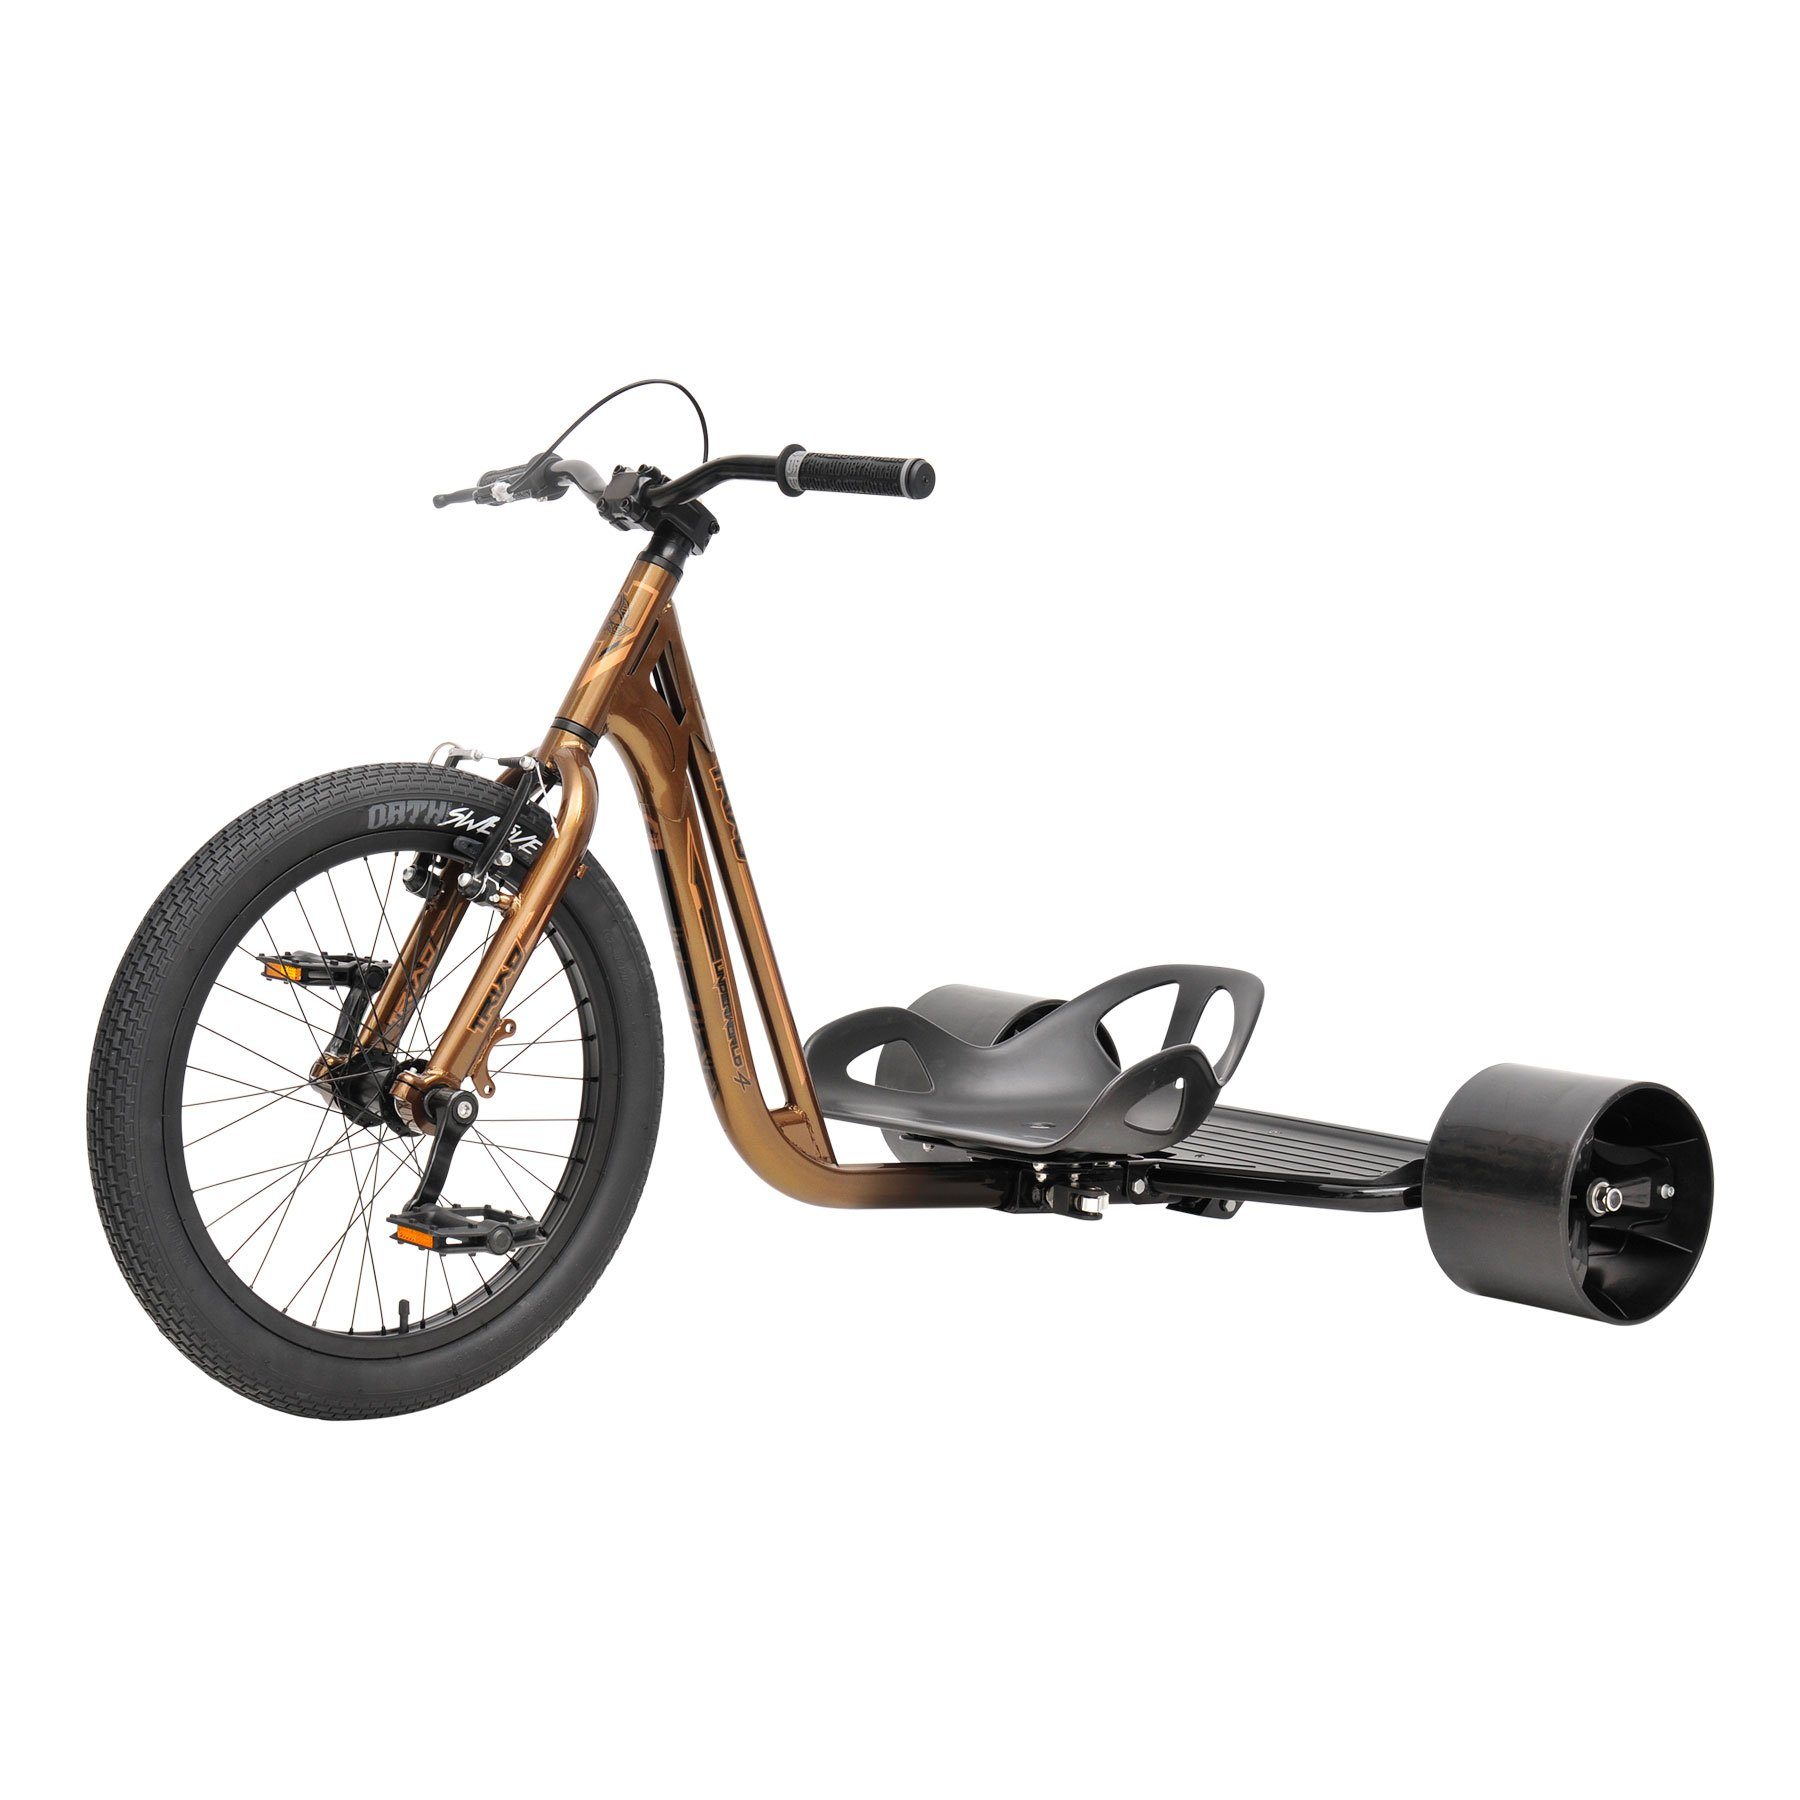 Körpergröße Copper/Black, Jahren Triad für Fun auch Underworld ab Fahrzeug Kinder geeignet 13 oder Erwachsenendreirad Drift 4 140 cm Trike